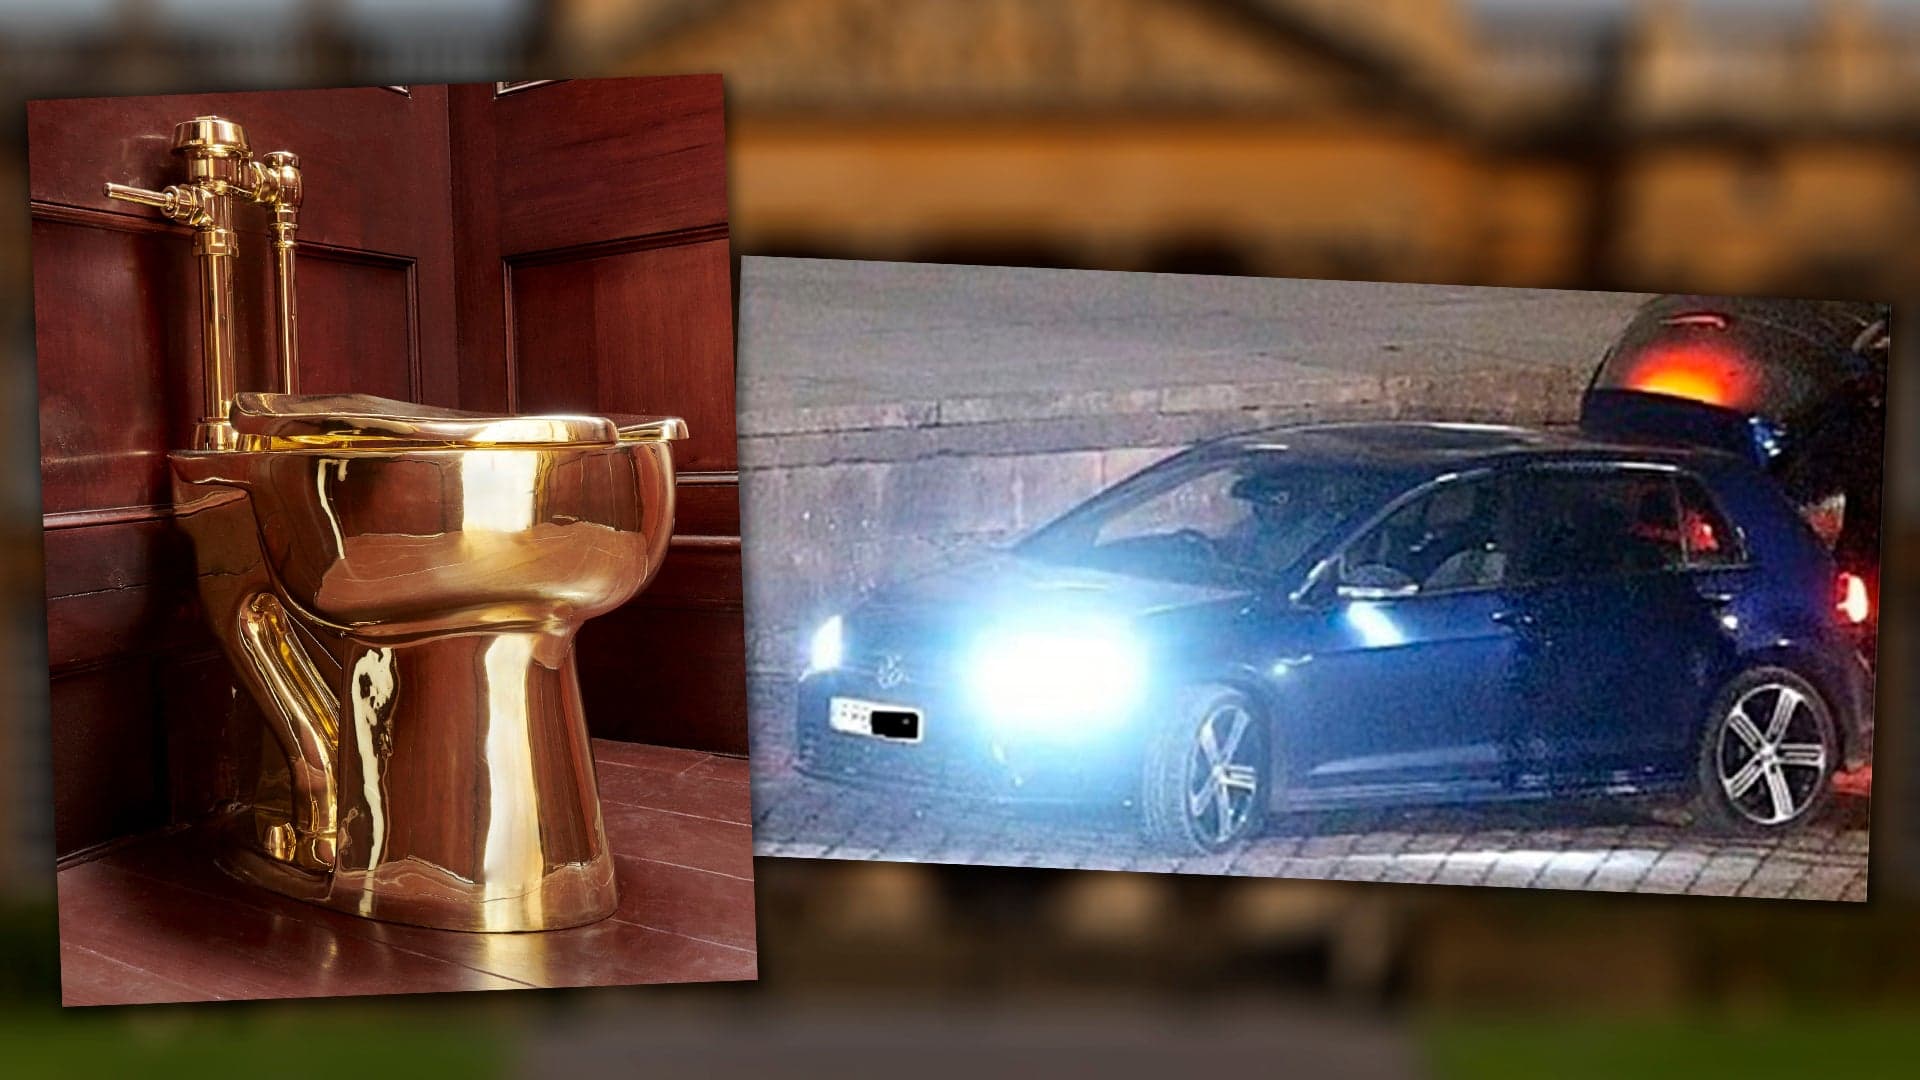 Volkswagen Golf R Used as Getaway Car in $6 Million Gold Toilet Heist